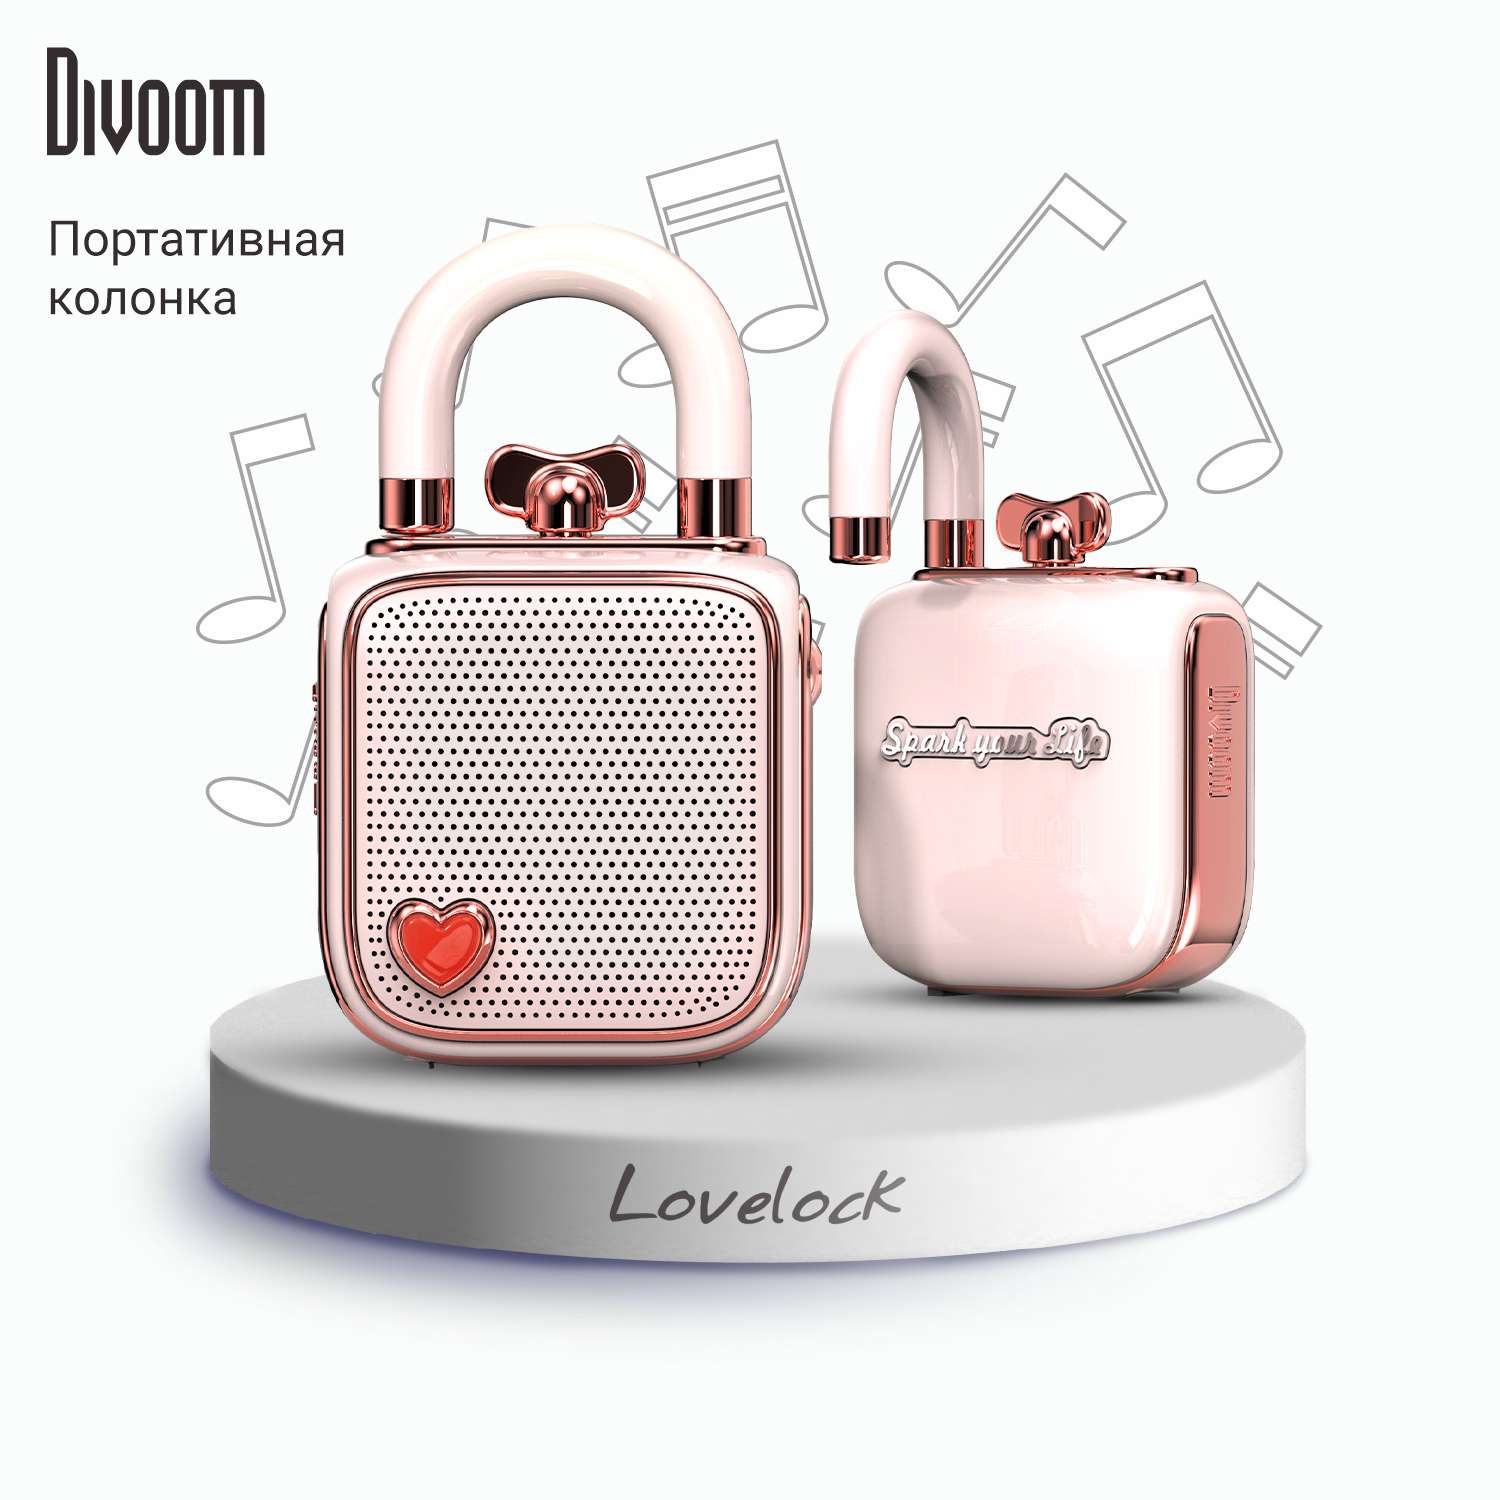 Беспроводная колонка DIVOOM портативная LoveLock розовая - фото 2